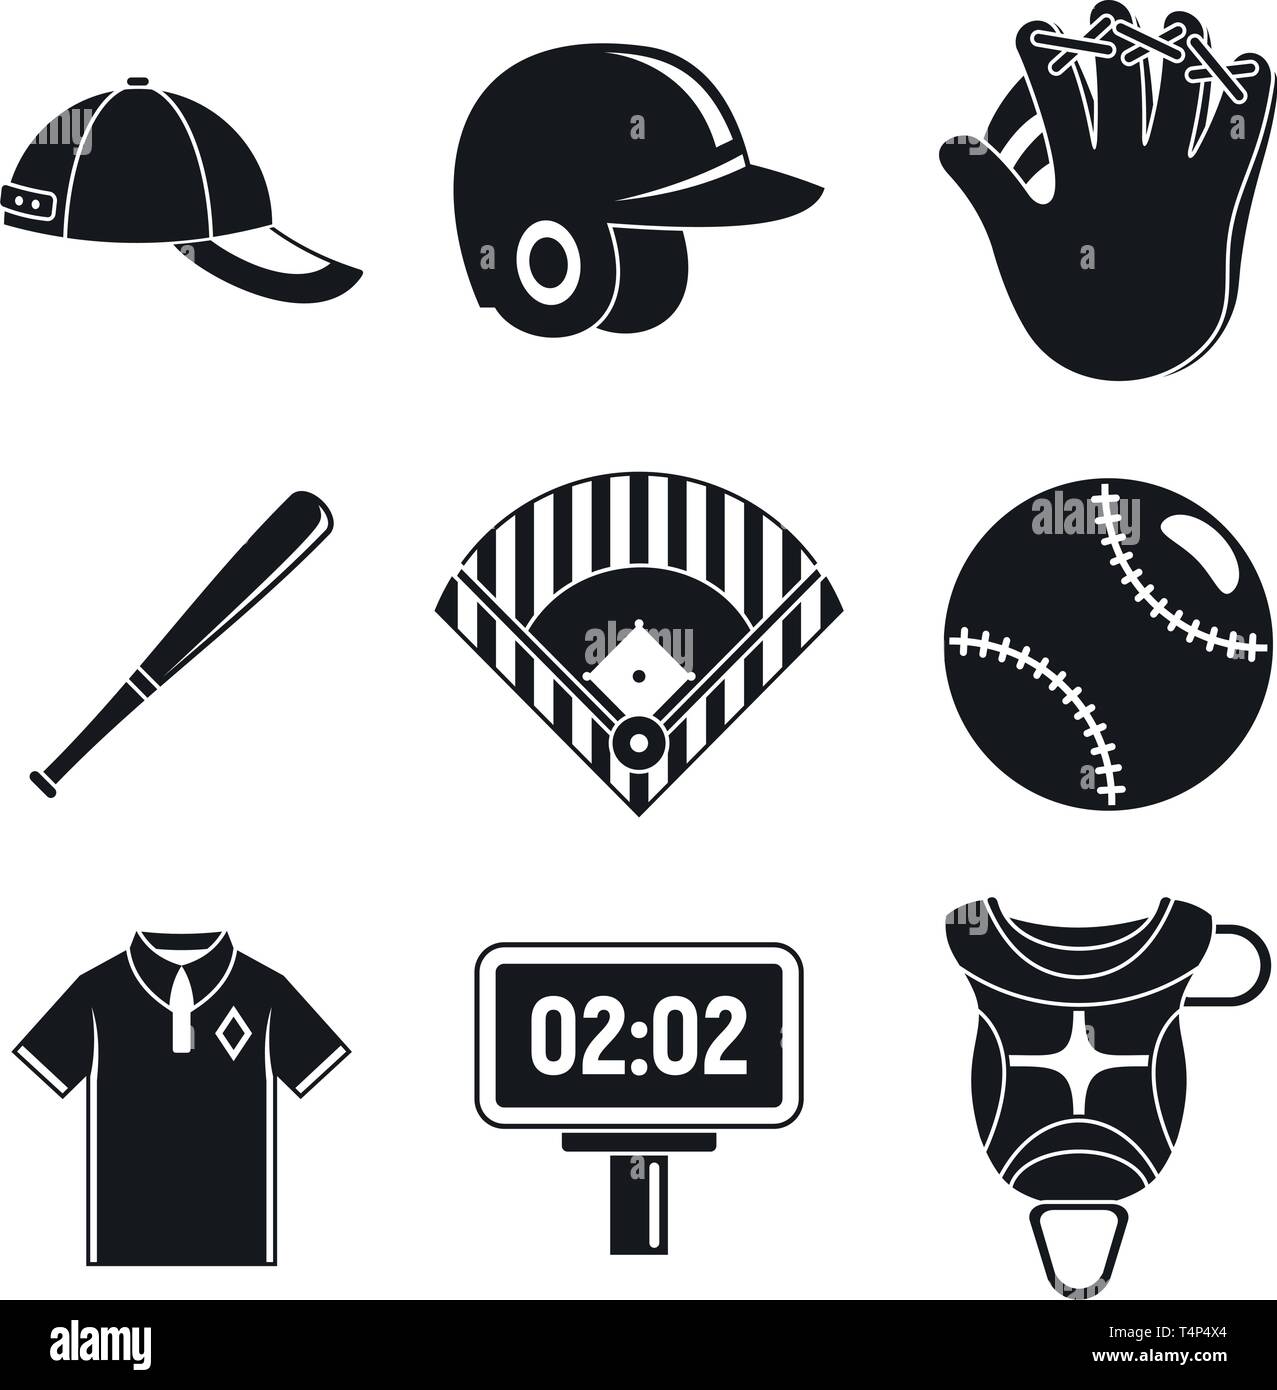 Baseball Ausrüstung Symbole gesetzt. Einfache baseball Ausrüstung Vector  Icons für Web Design auf weißem Hintergrund Stock-Vektorgrafik - Alamy